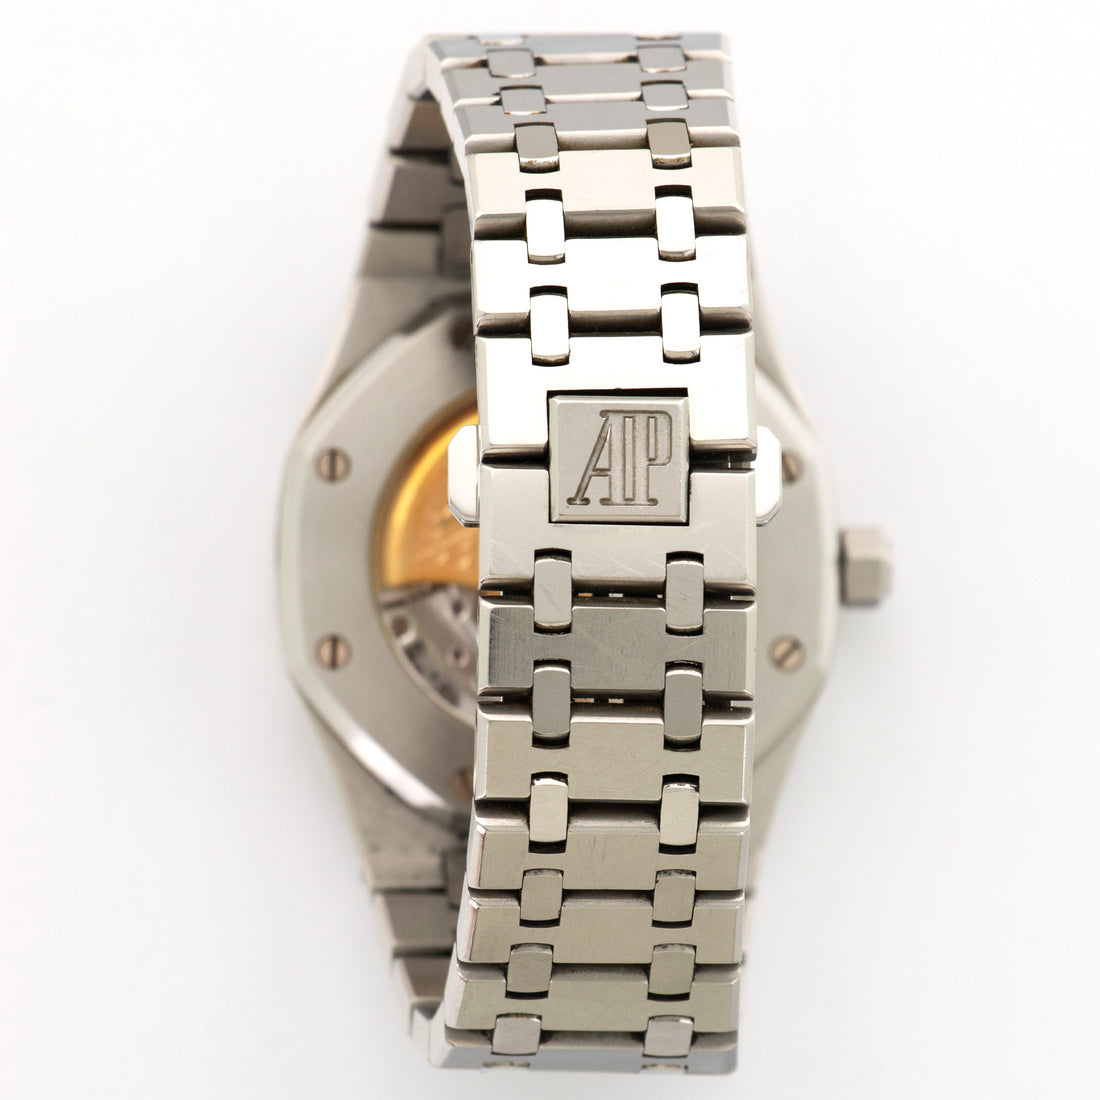 Audemars Piguet Steel Royal Oak Watch Ref. 15300